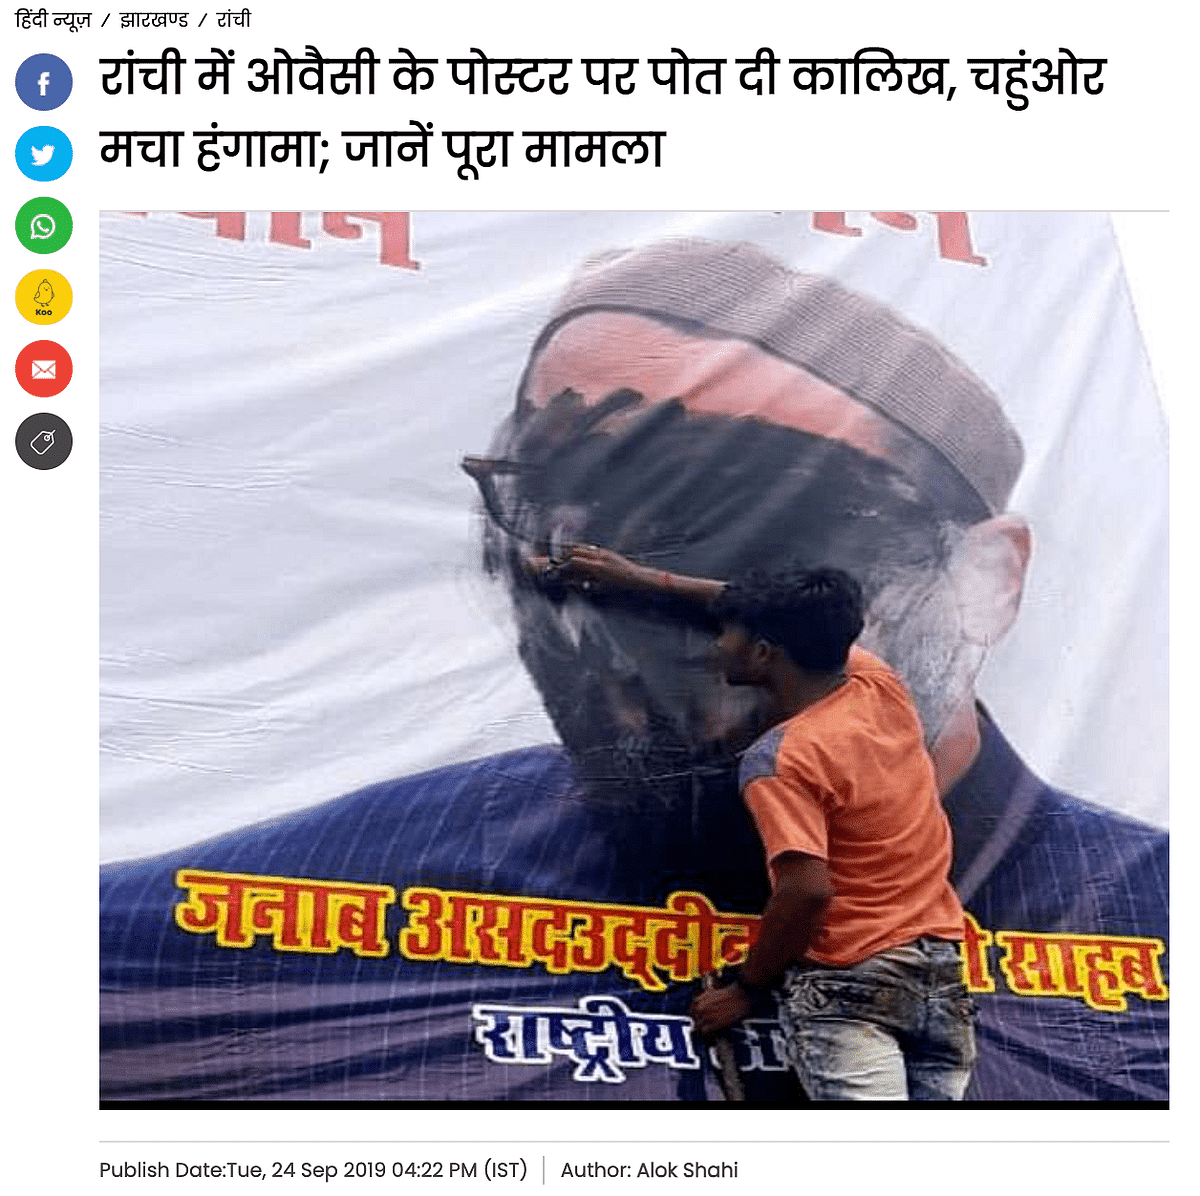 Owaisi के पोस्टर पर कालिख लगाते शख्स वाली फोटो 2019 झारखंड चुनाव के दौरान की है. इसका यूपी से कोई संबंध नहीं है.